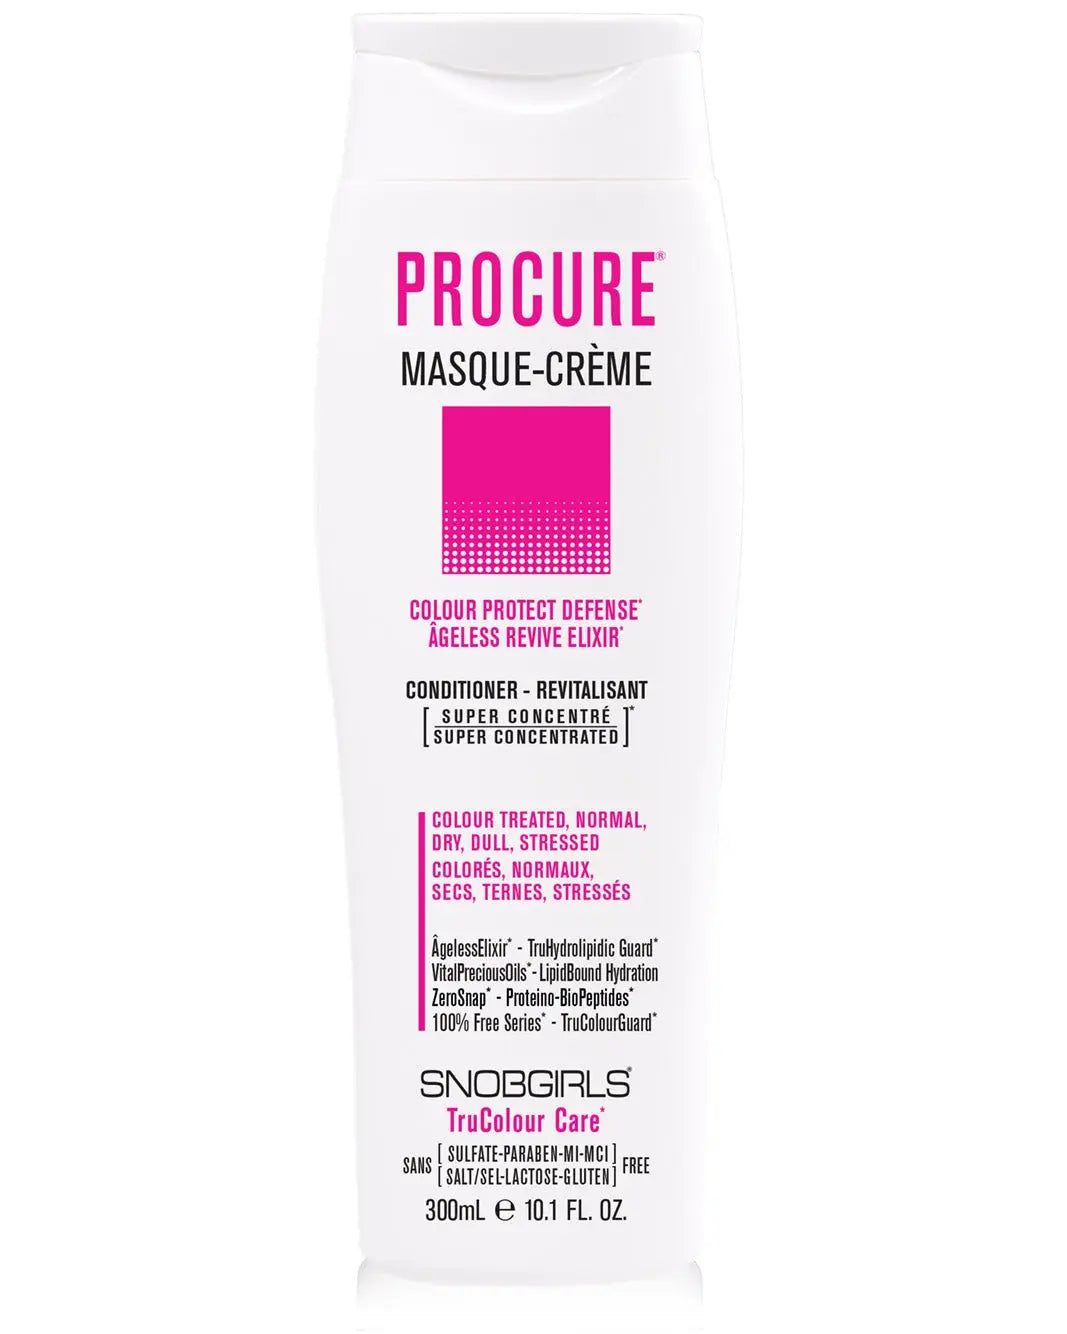 PROCURE Masque-Creme Vegan Hair Conditioner - SNOBGIRLS.com